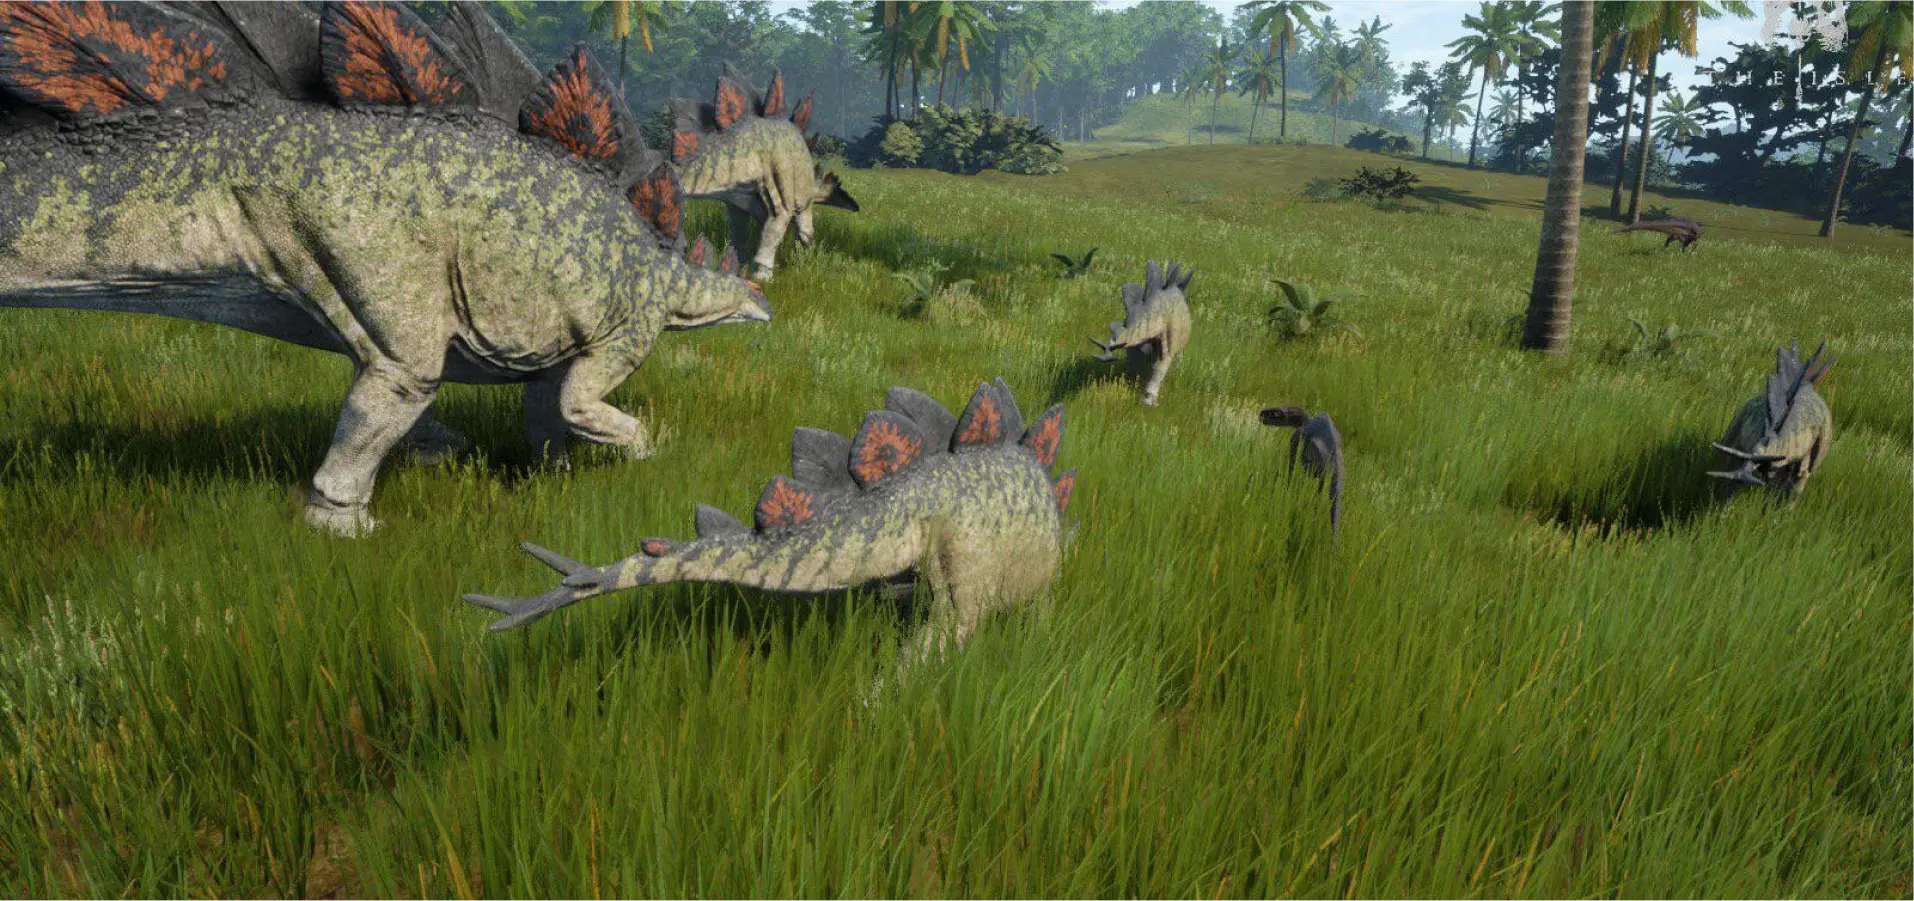 stegosaurus running